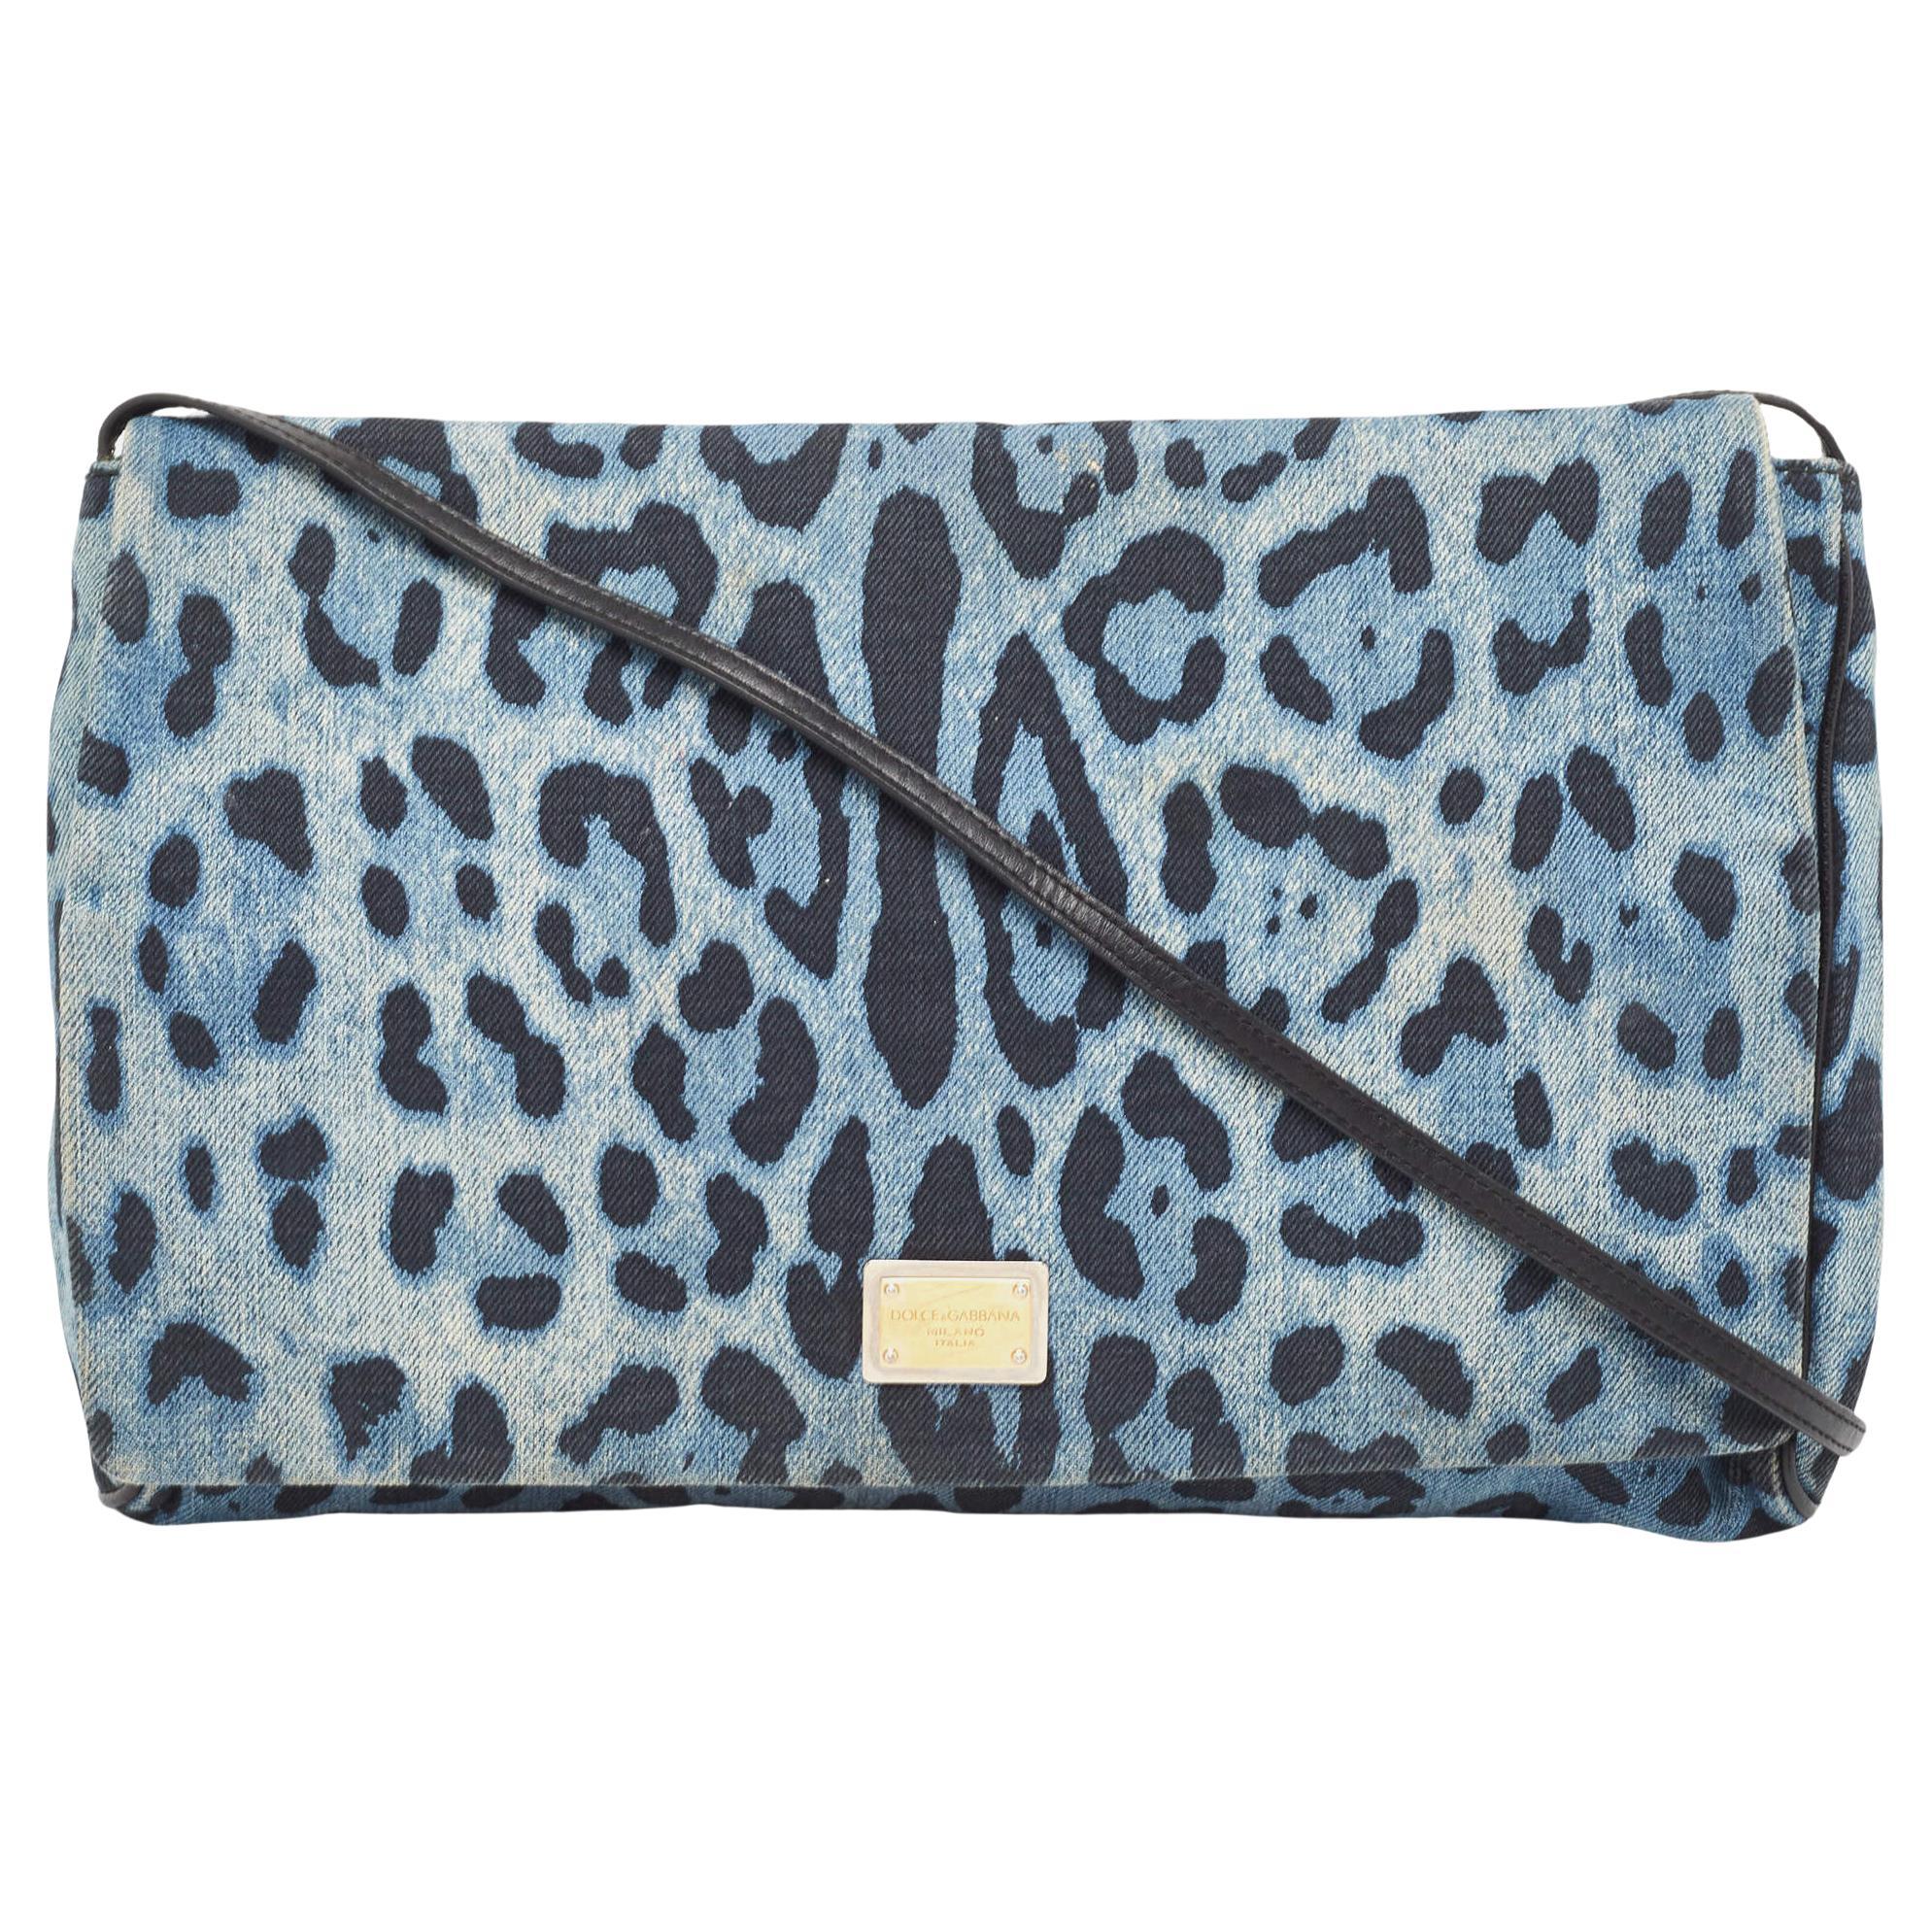 Dolce & Gabbana Blue/Black Leopard Print Denim Flap Shoulder Bag